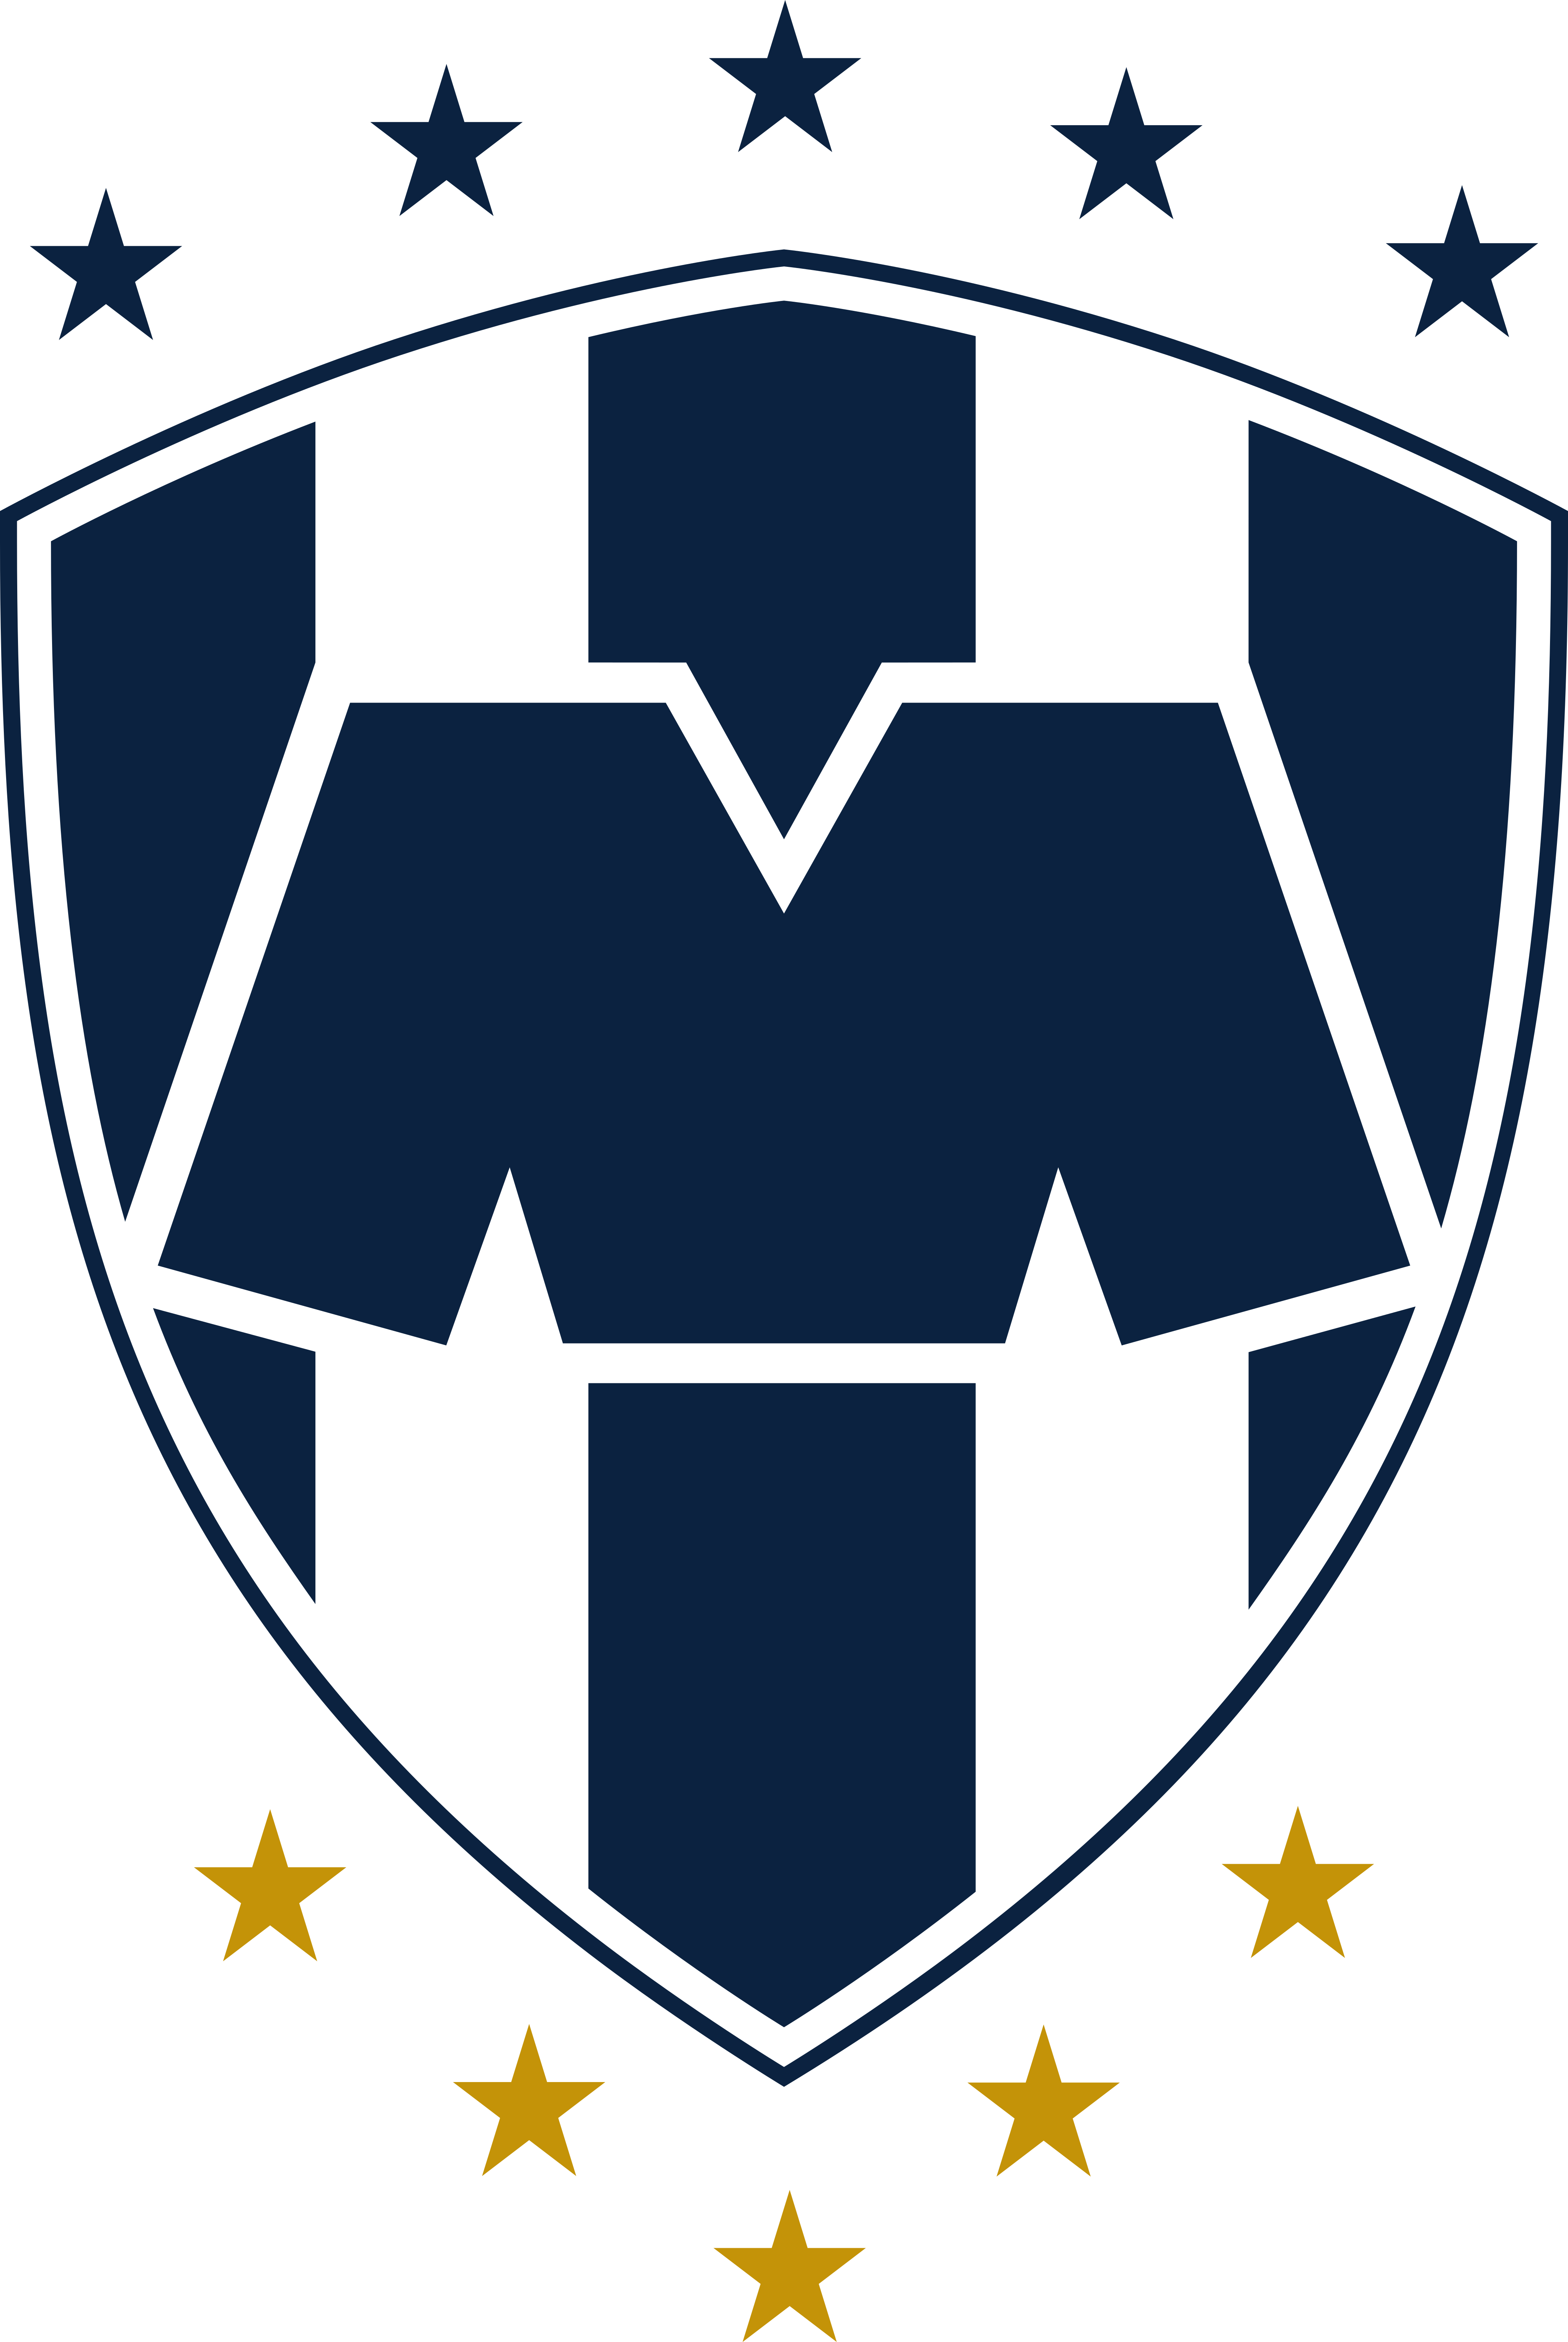 rayados monterrey logo 1 - Rayados Monterrey Logo